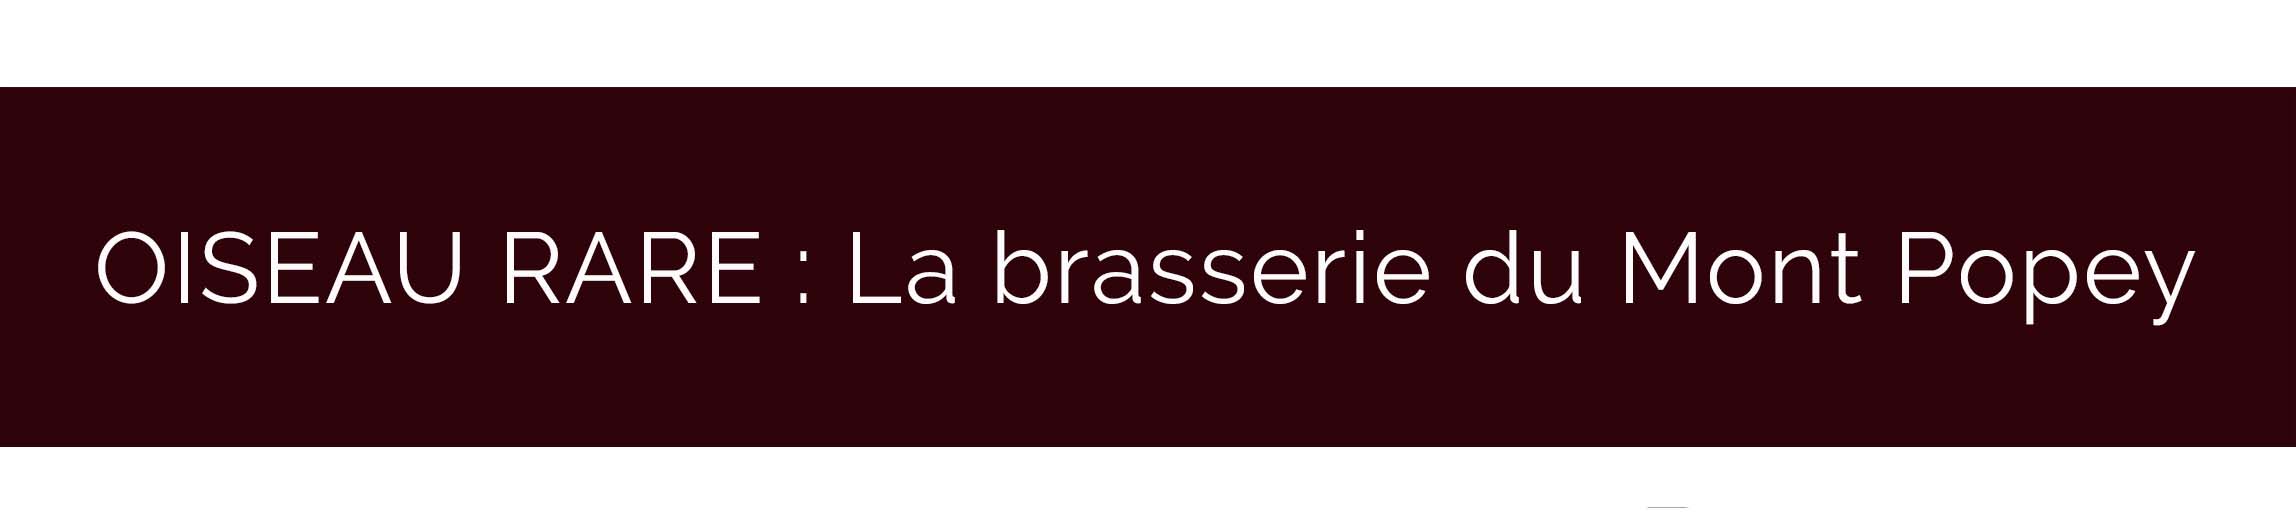 bandeau-artisan-brasserie-mont-popey